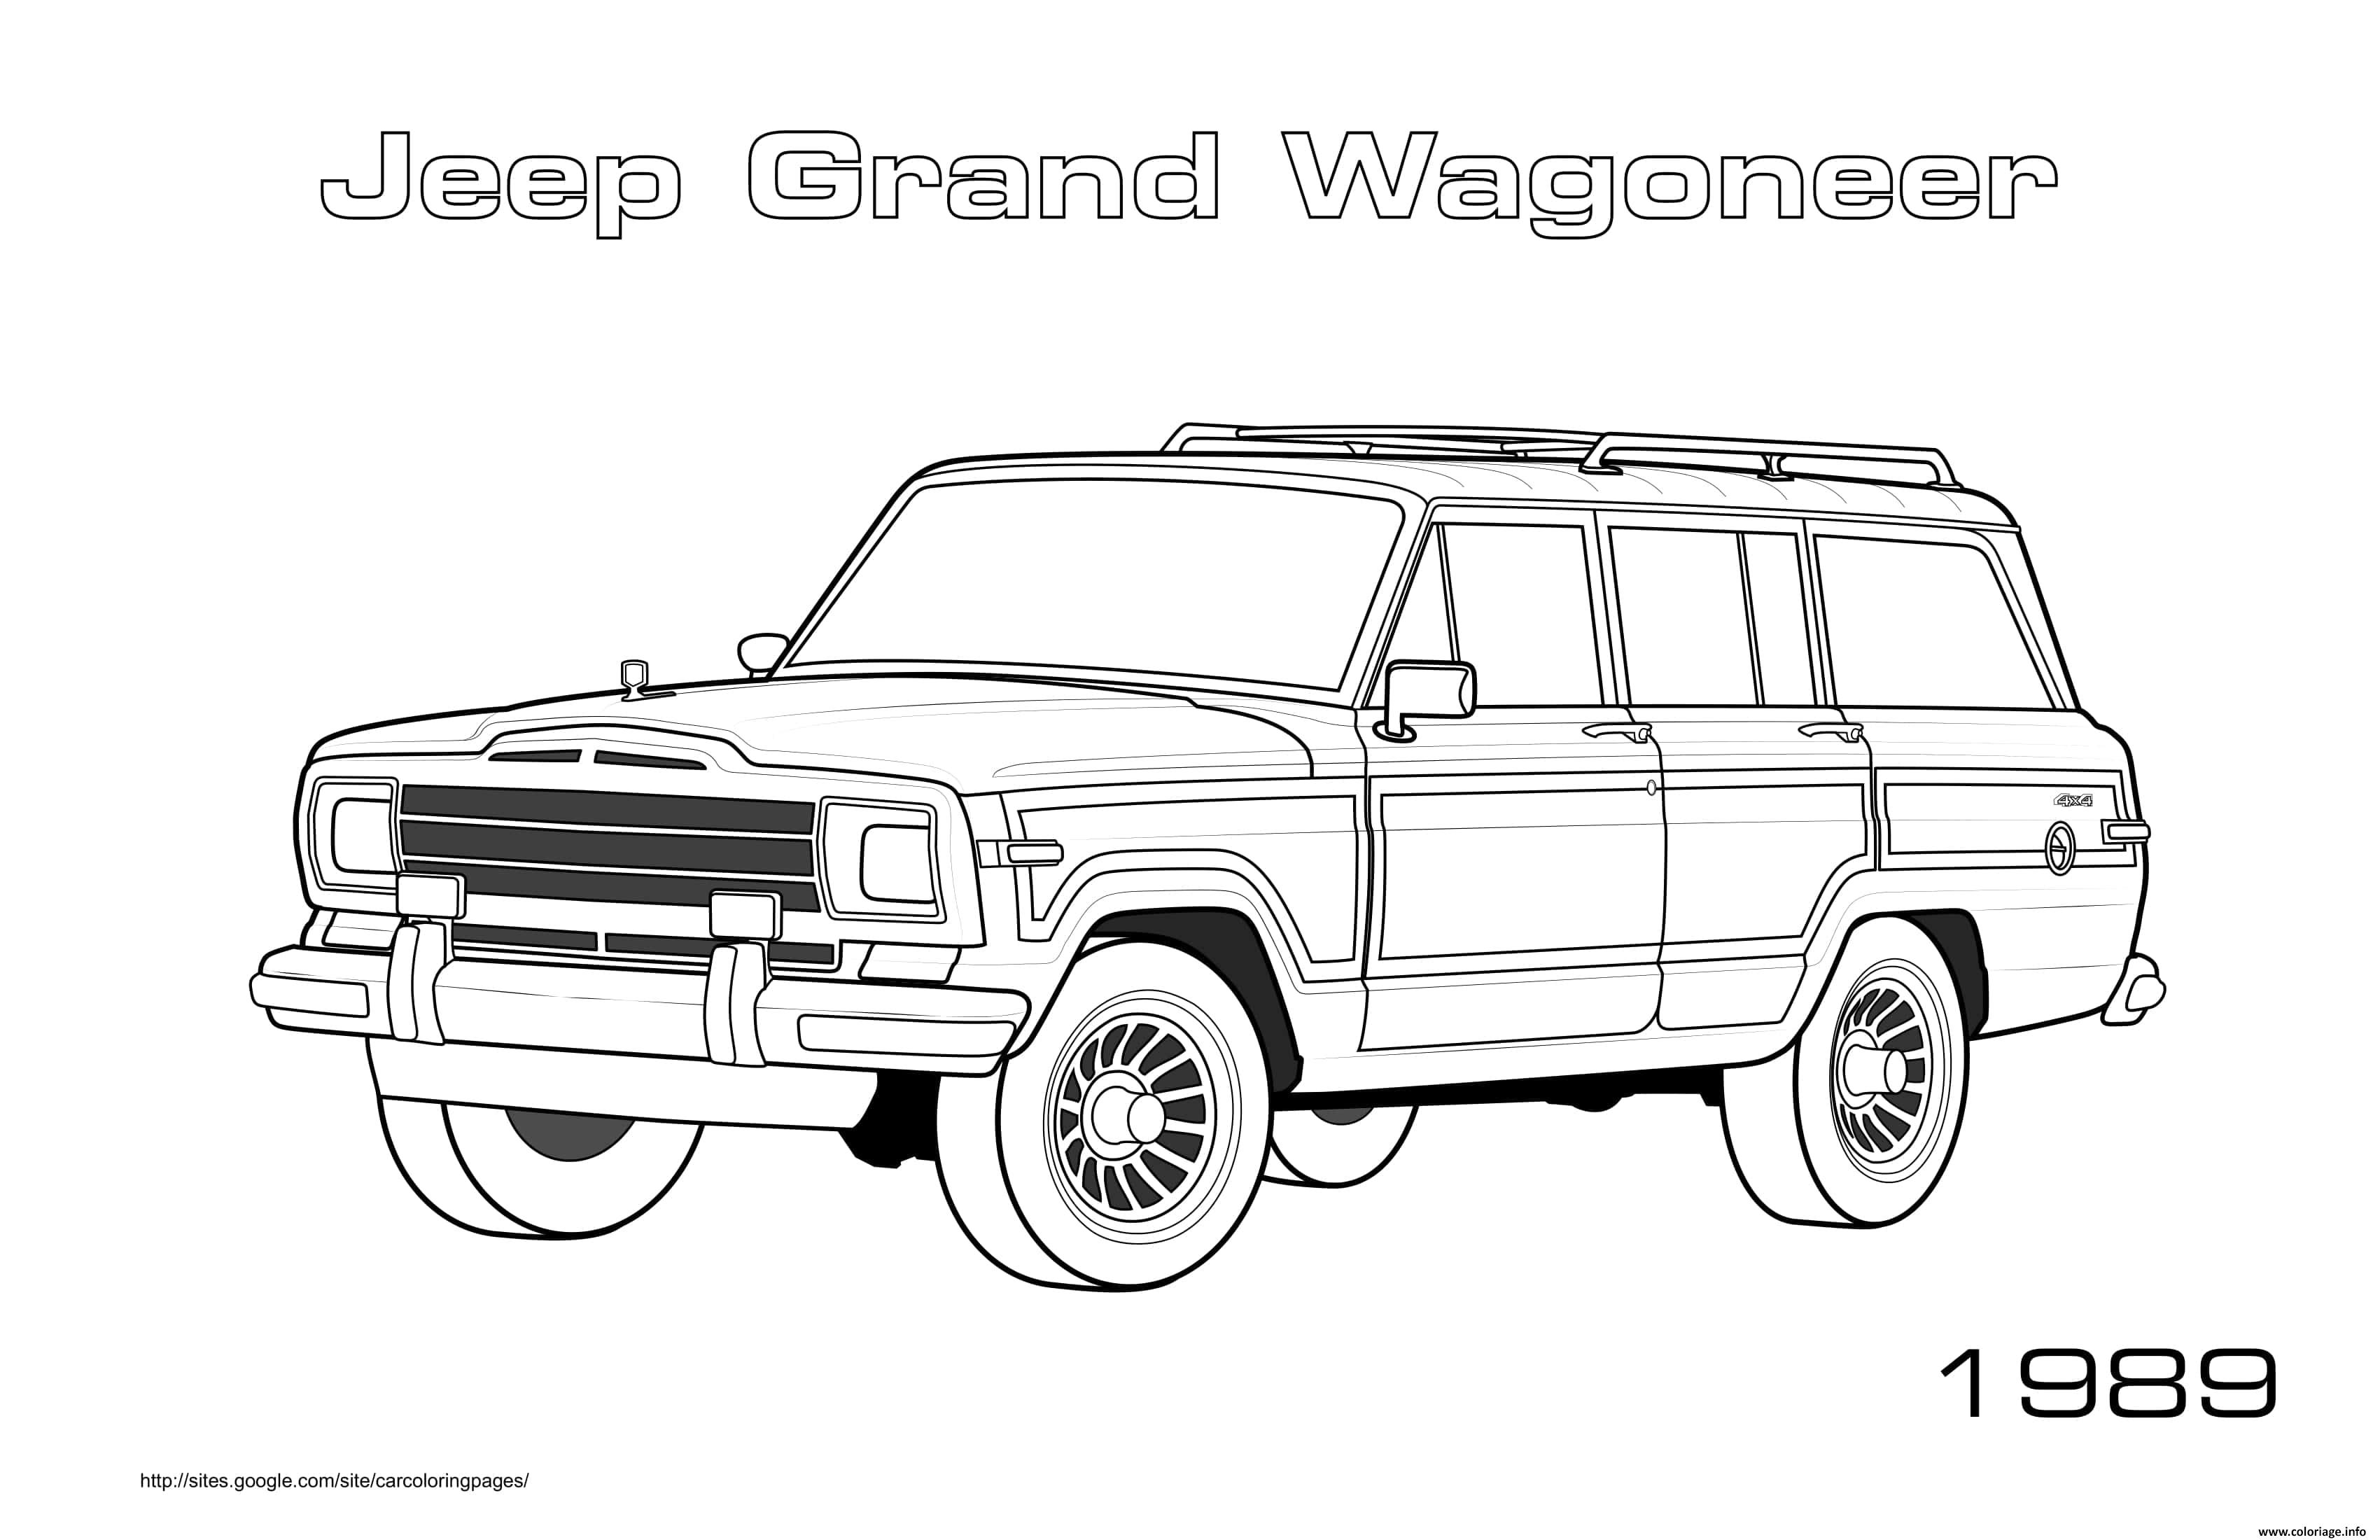 Dessin Jeep Grand Wagoneer 1989 Coloriage Gratuit à Imprimer